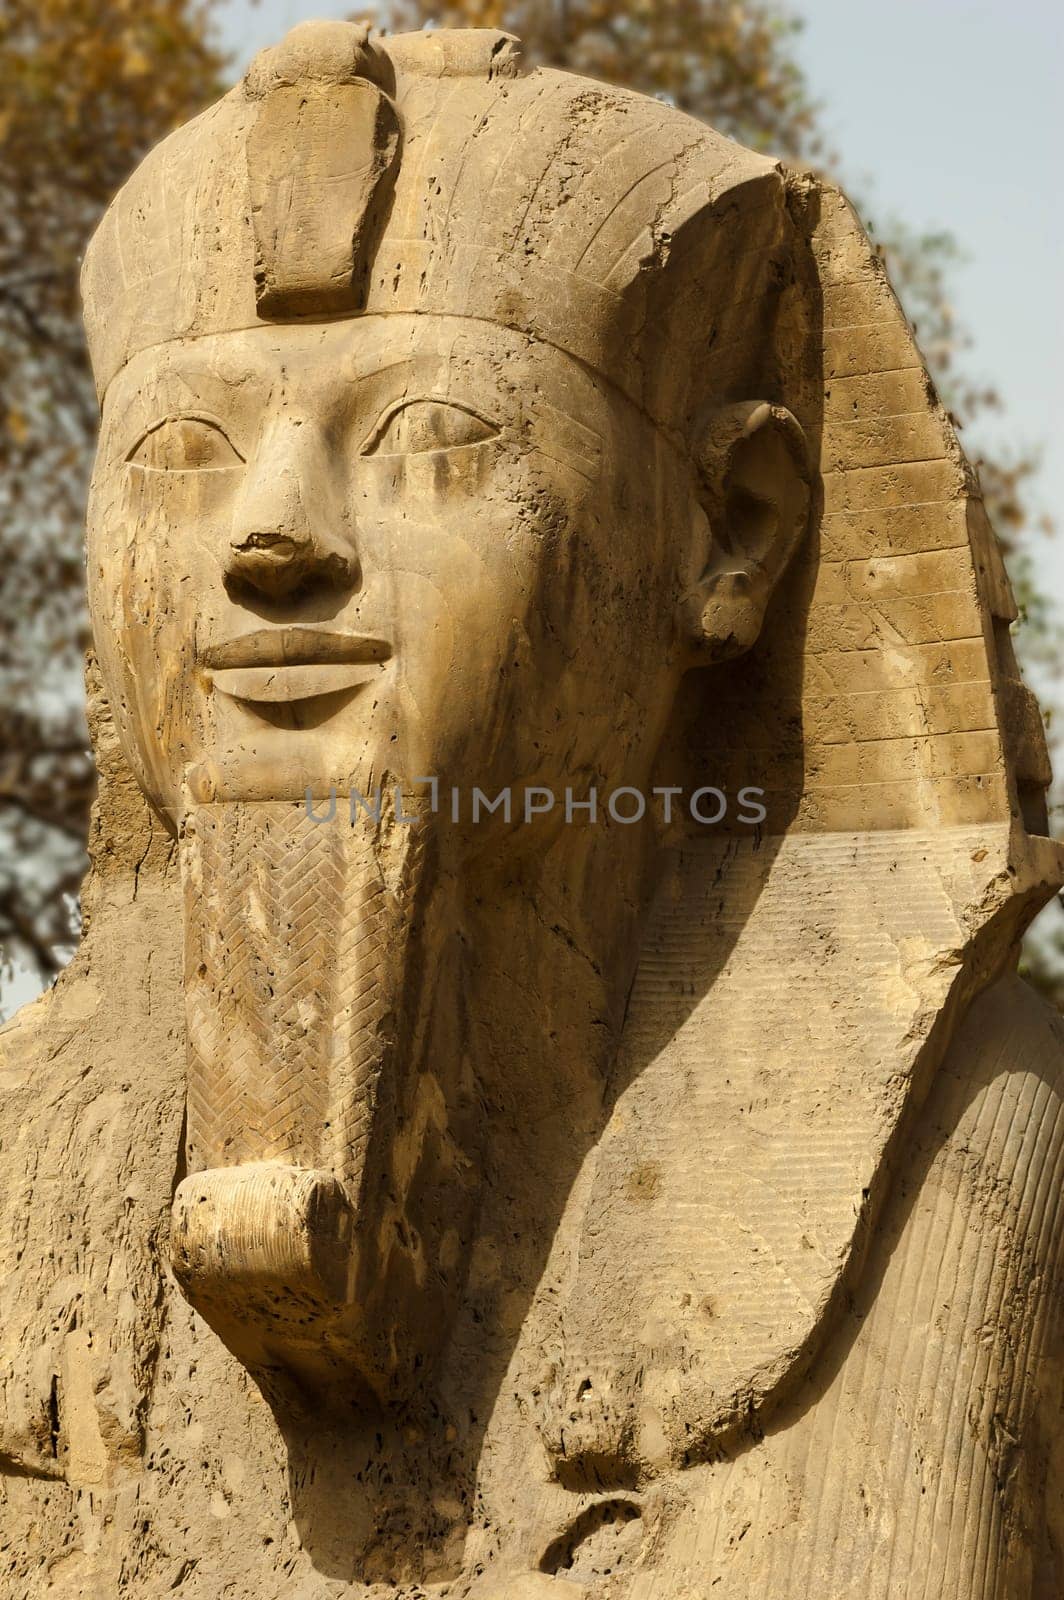 Sphinx of Ramses II by Giamplume